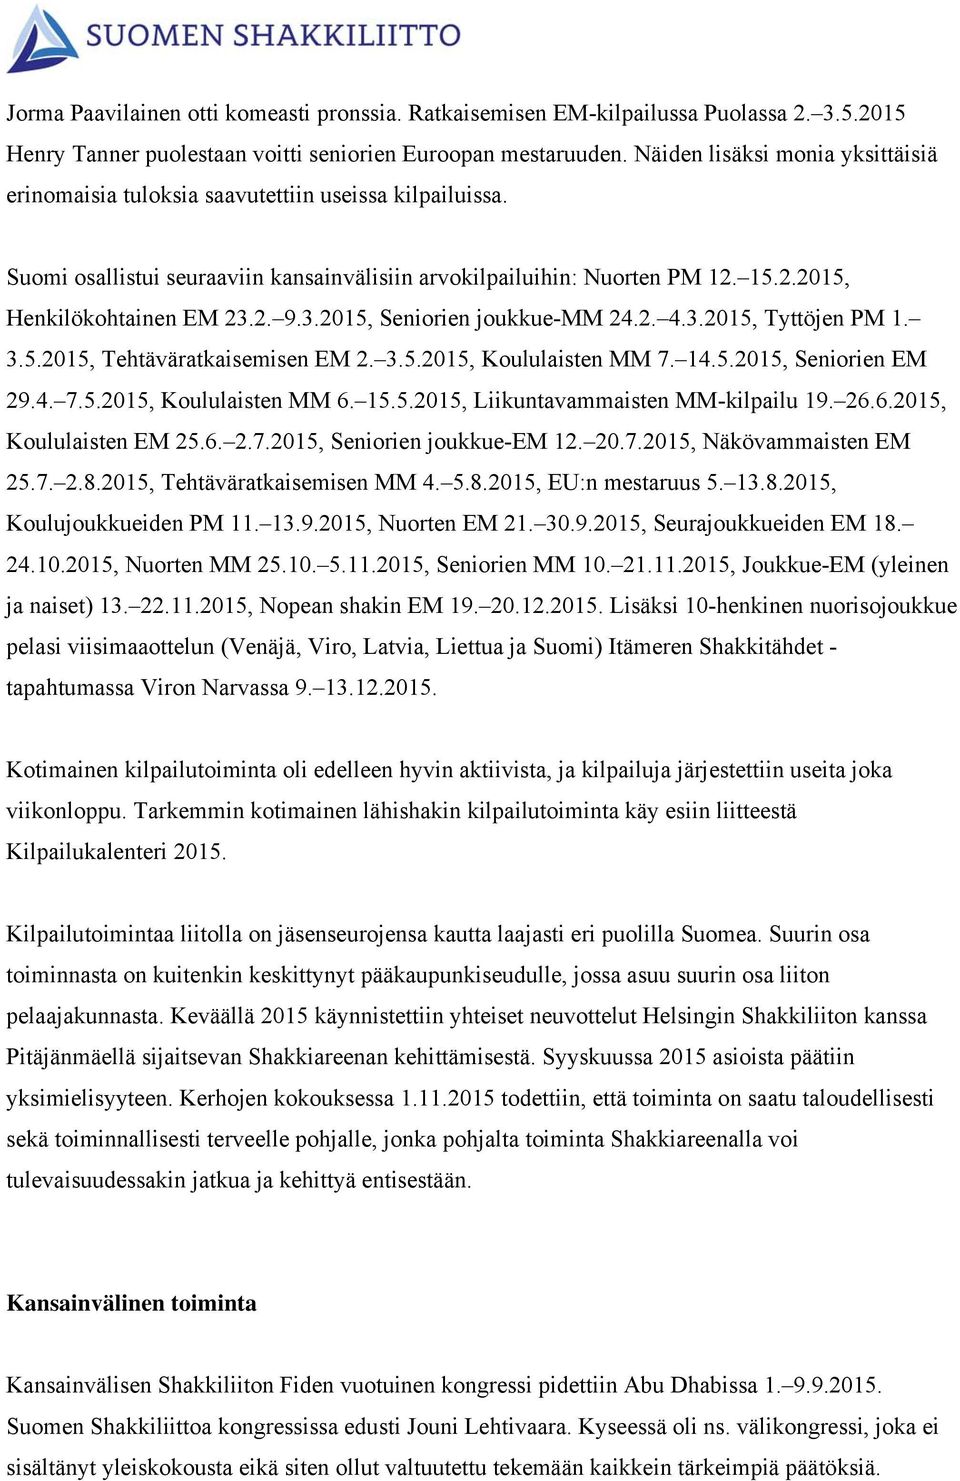 2. 9.3.2015, Seniorien joukkue-mm 24.2. 4.3.2015, Tyttöjen PM 1. 3.5.2015, Tehtäväratkaisemisen EM 2. 3.5.2015, Koululaisten MM 7. 14.5.2015, Seniorien EM 29.4. 7.5.2015, Koululaisten MM 6. 15.5.2015, Liikuntavammaisten MM-kilpailu 19.